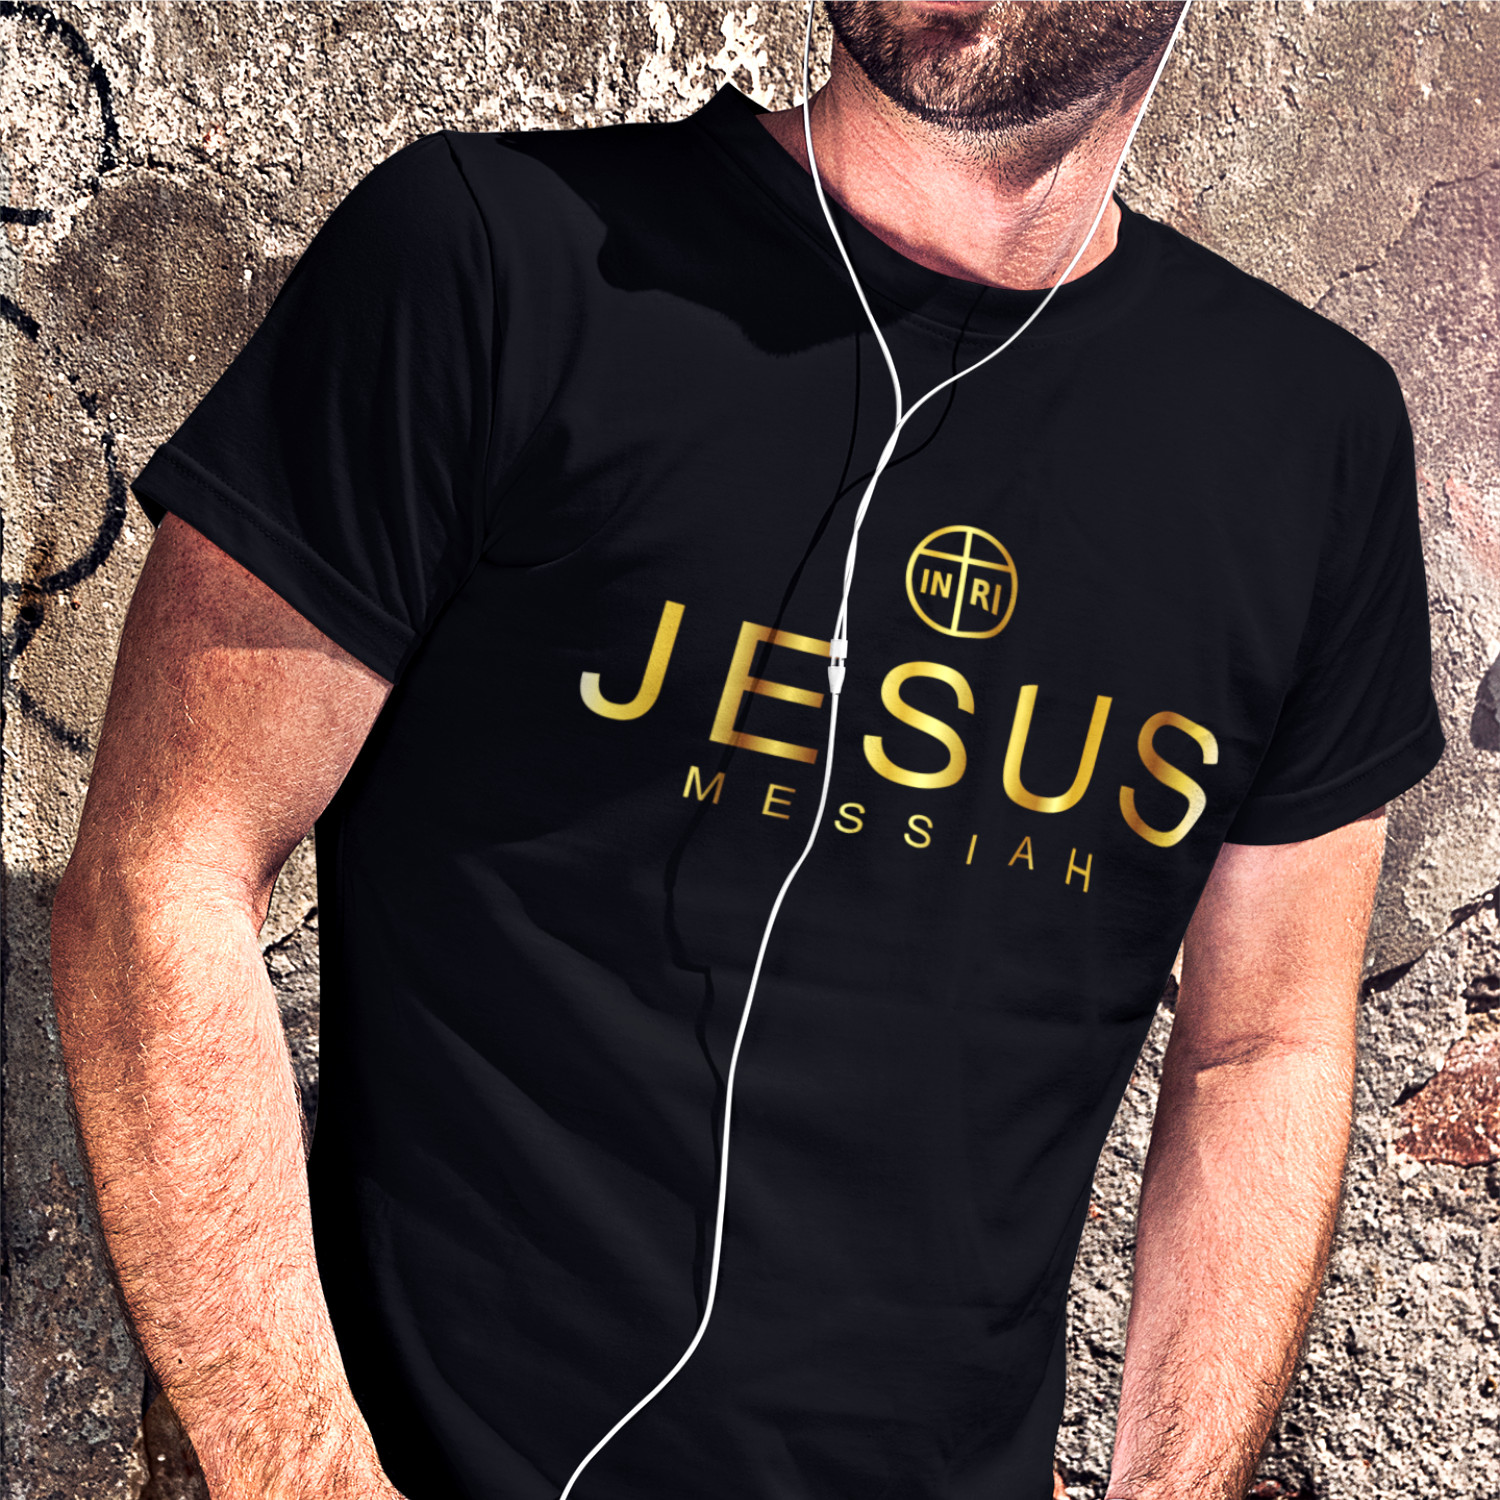 JESUS MESSIAH GOLD - pánské tričko černé